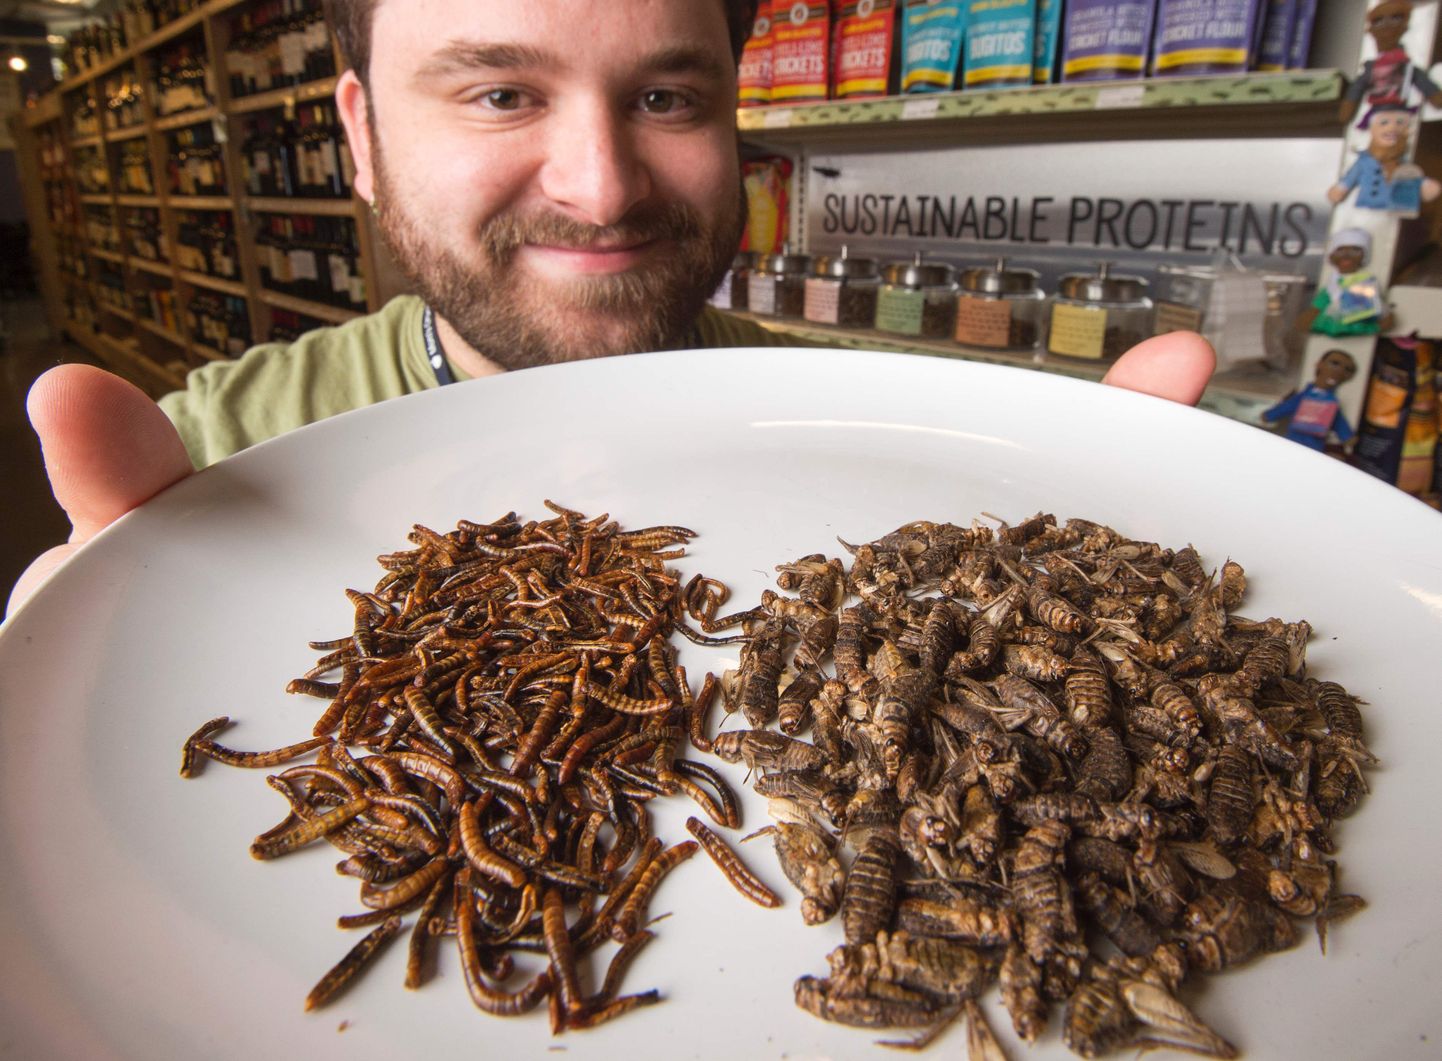 Väga paljud toidukohad pakuvad juba täna putukatest valmistatud toite.